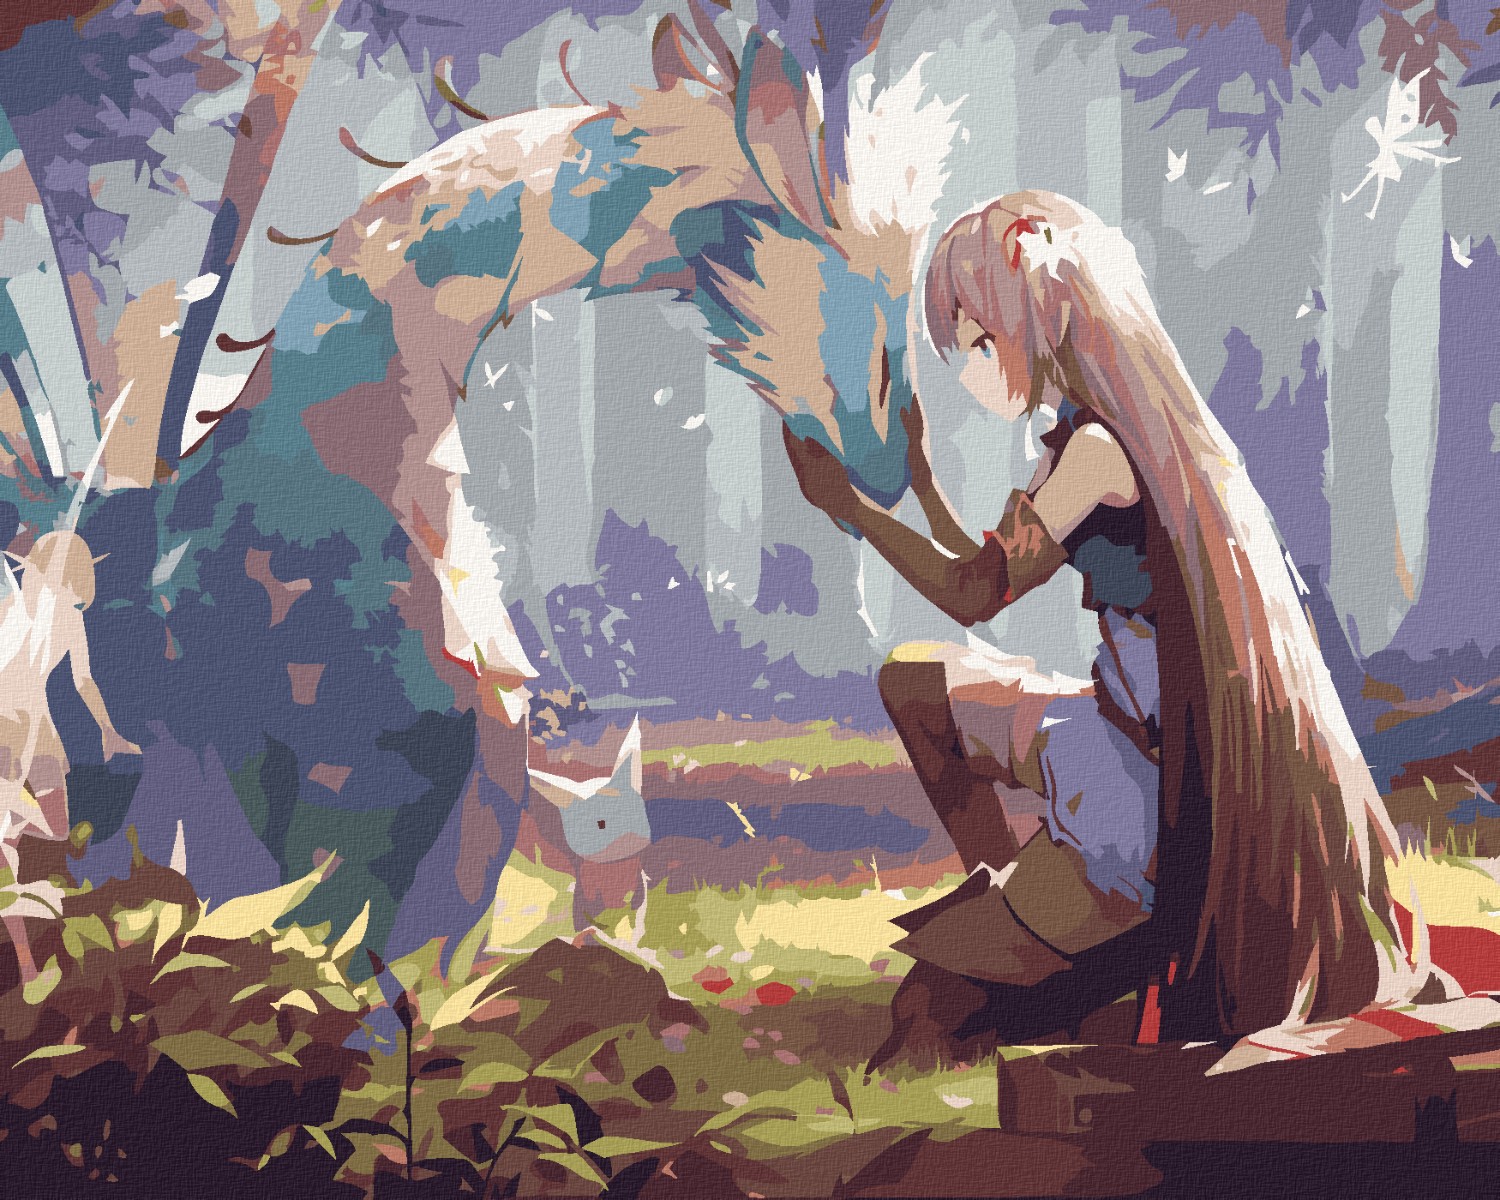 Maľovanie podľa čísel Anime dievča s drakom 40x50cm Zuty